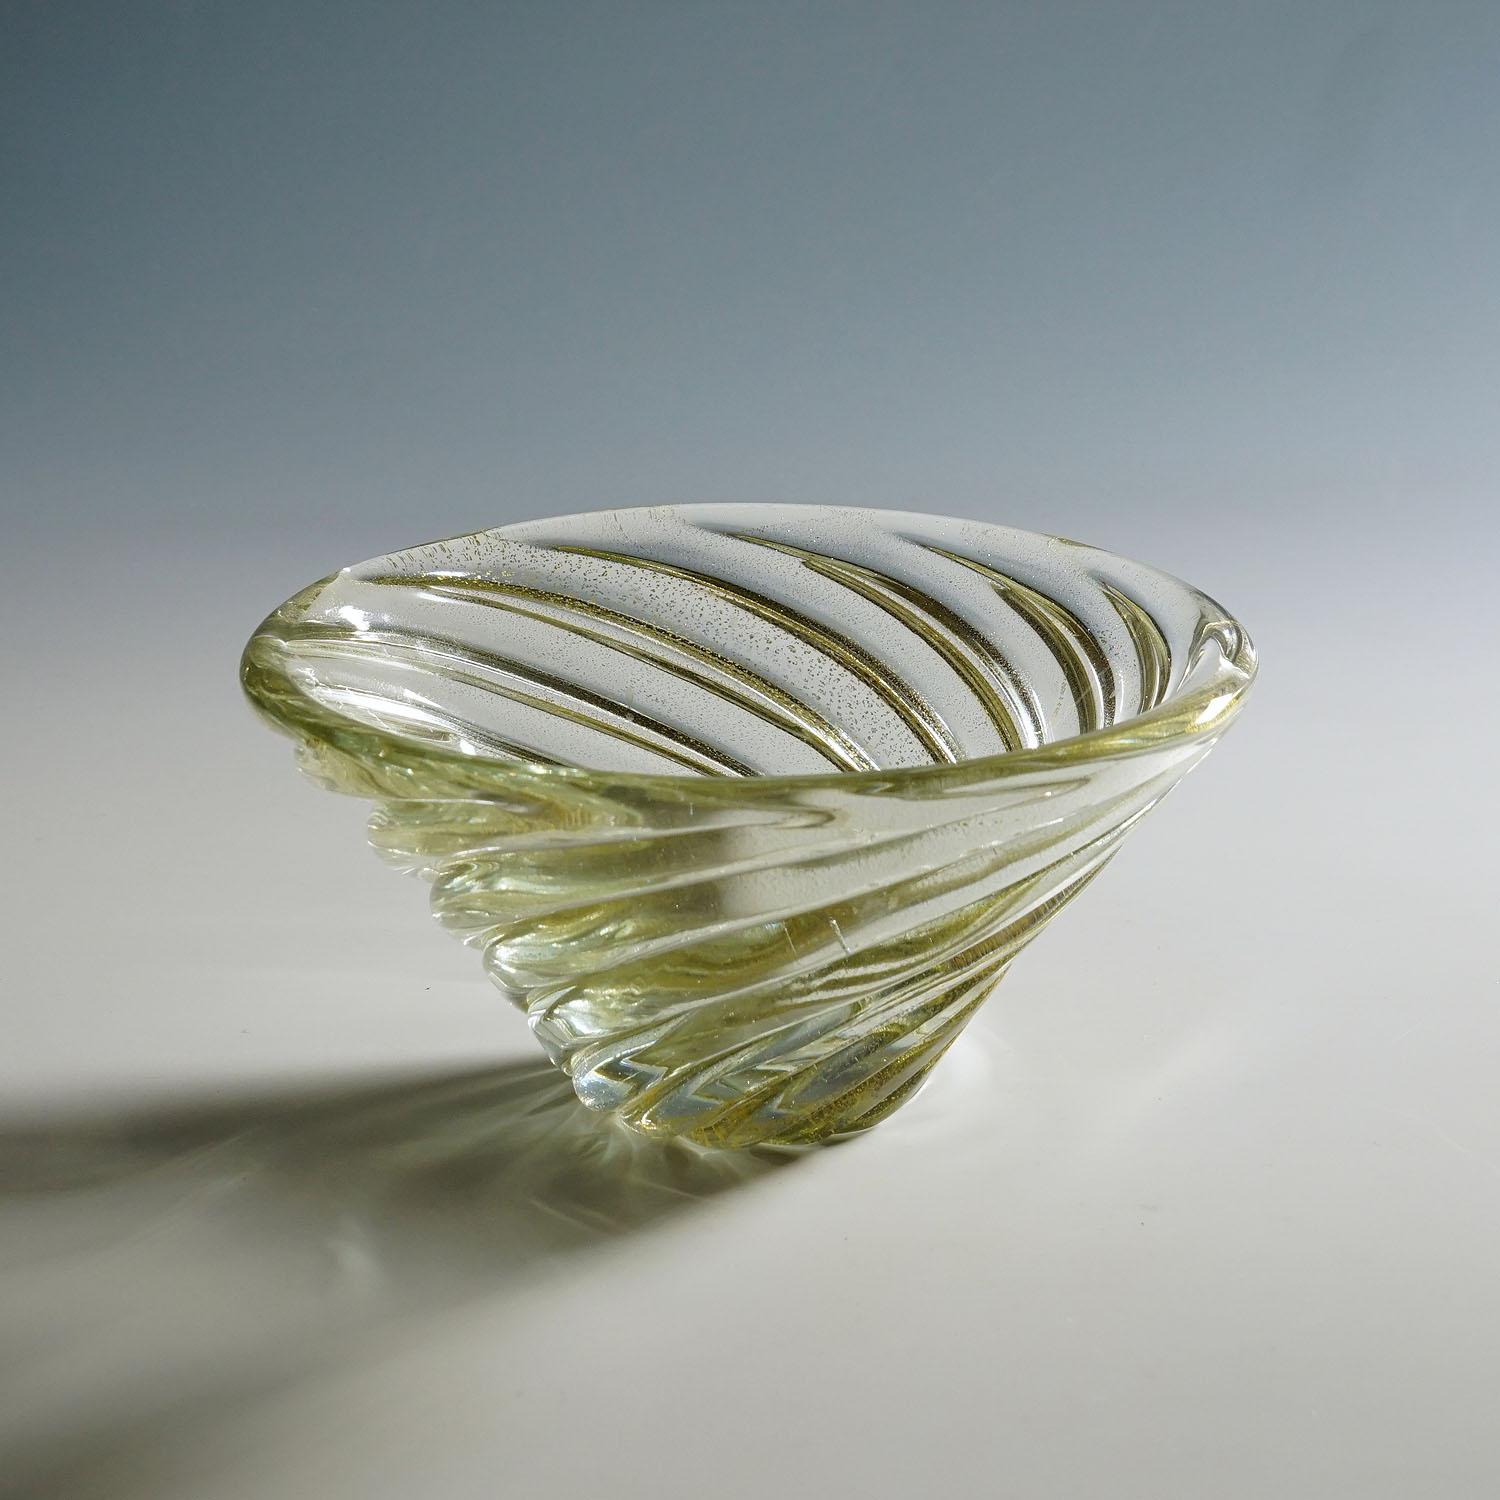 Venini-Kunstglasschale „Diamante“ von Paolo Venini, Murano, 1930er Jahre

Eine seltene Venini Kunstglasschale aus der Serie 'Diamante'. Schweres transparentes Glas mit einem Goldblatt-Einschluss frei geformt mit einer gedrehten Riffelung. 1934 von